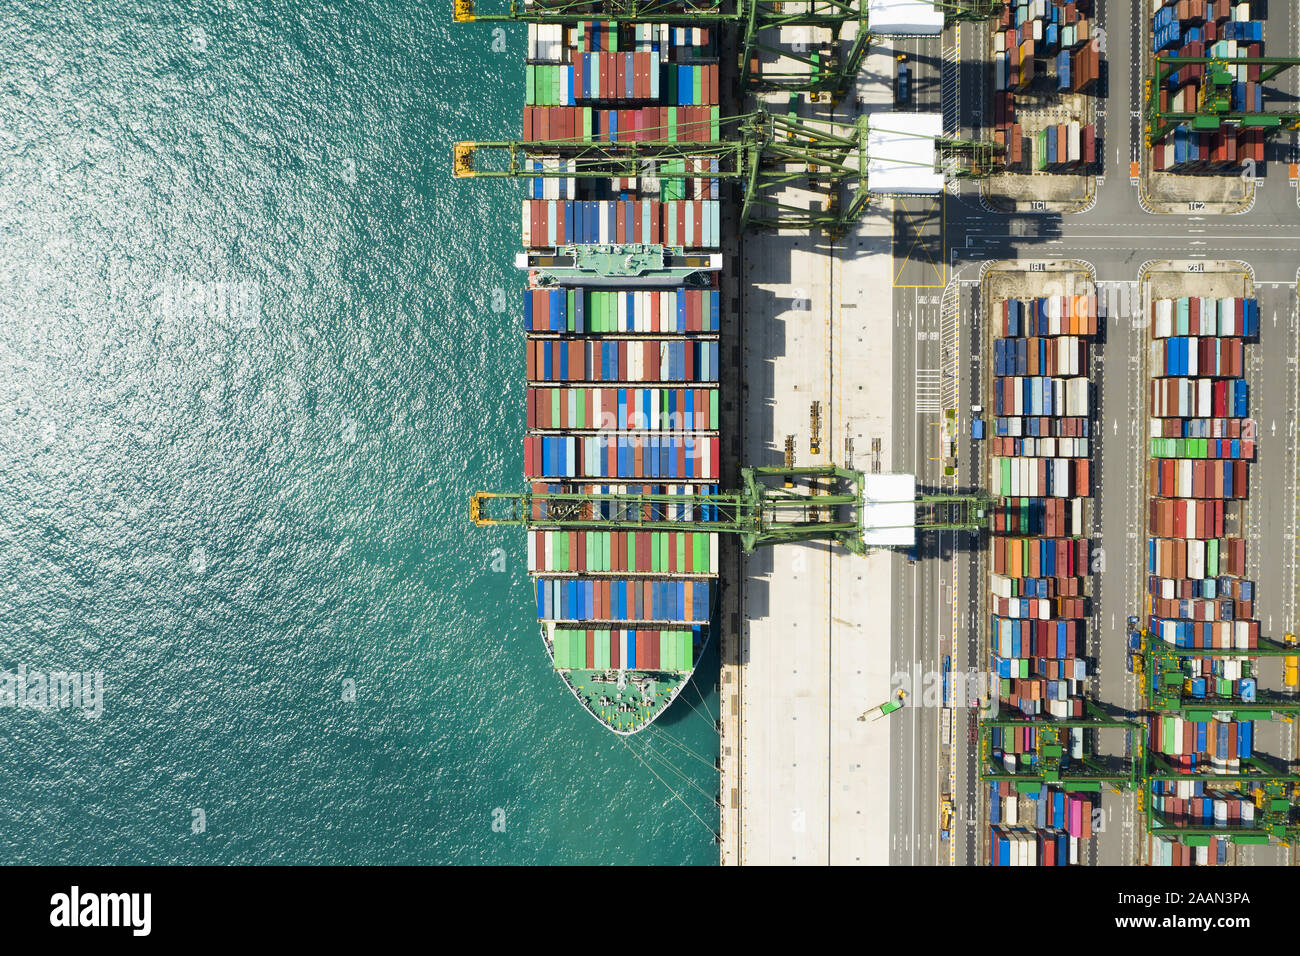 Vista desde arriba, la impresionante vista aérea del puerto de Singapur con cientos de contenedores de color listos para cargar en los buques de carga. Foto de stock